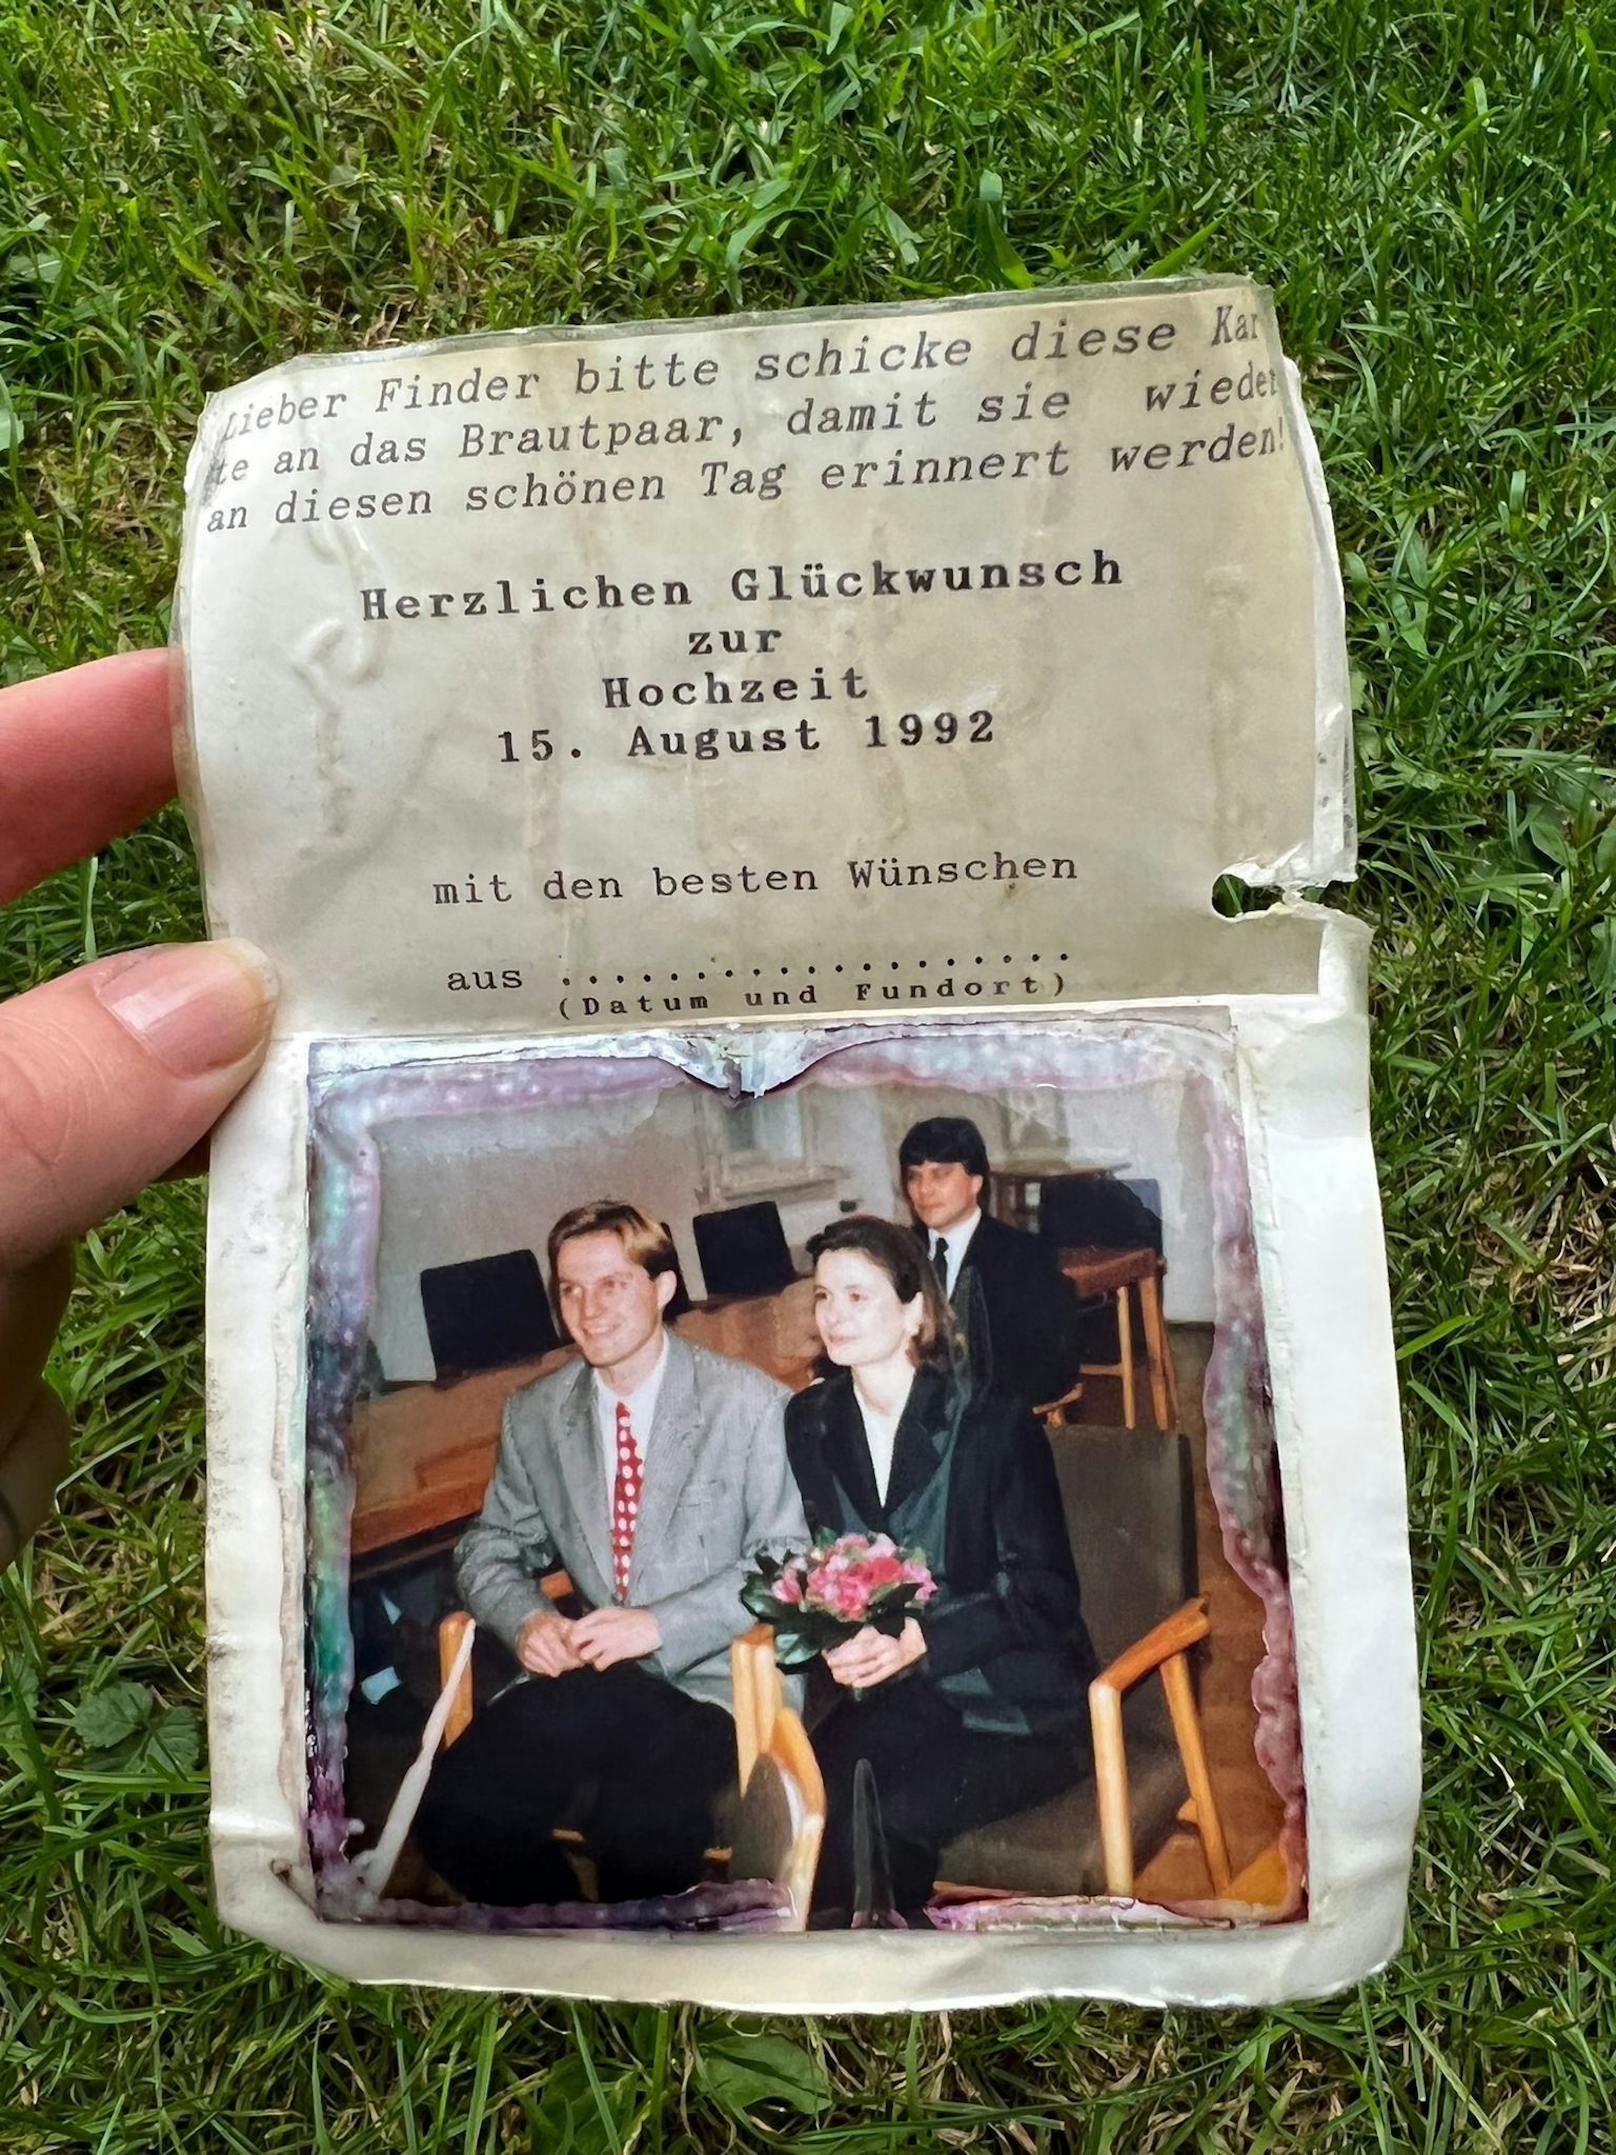 Romantischer Fund im Wald: Das Hochzeitsfoto von Sabine und Thomas B. aus 1992.